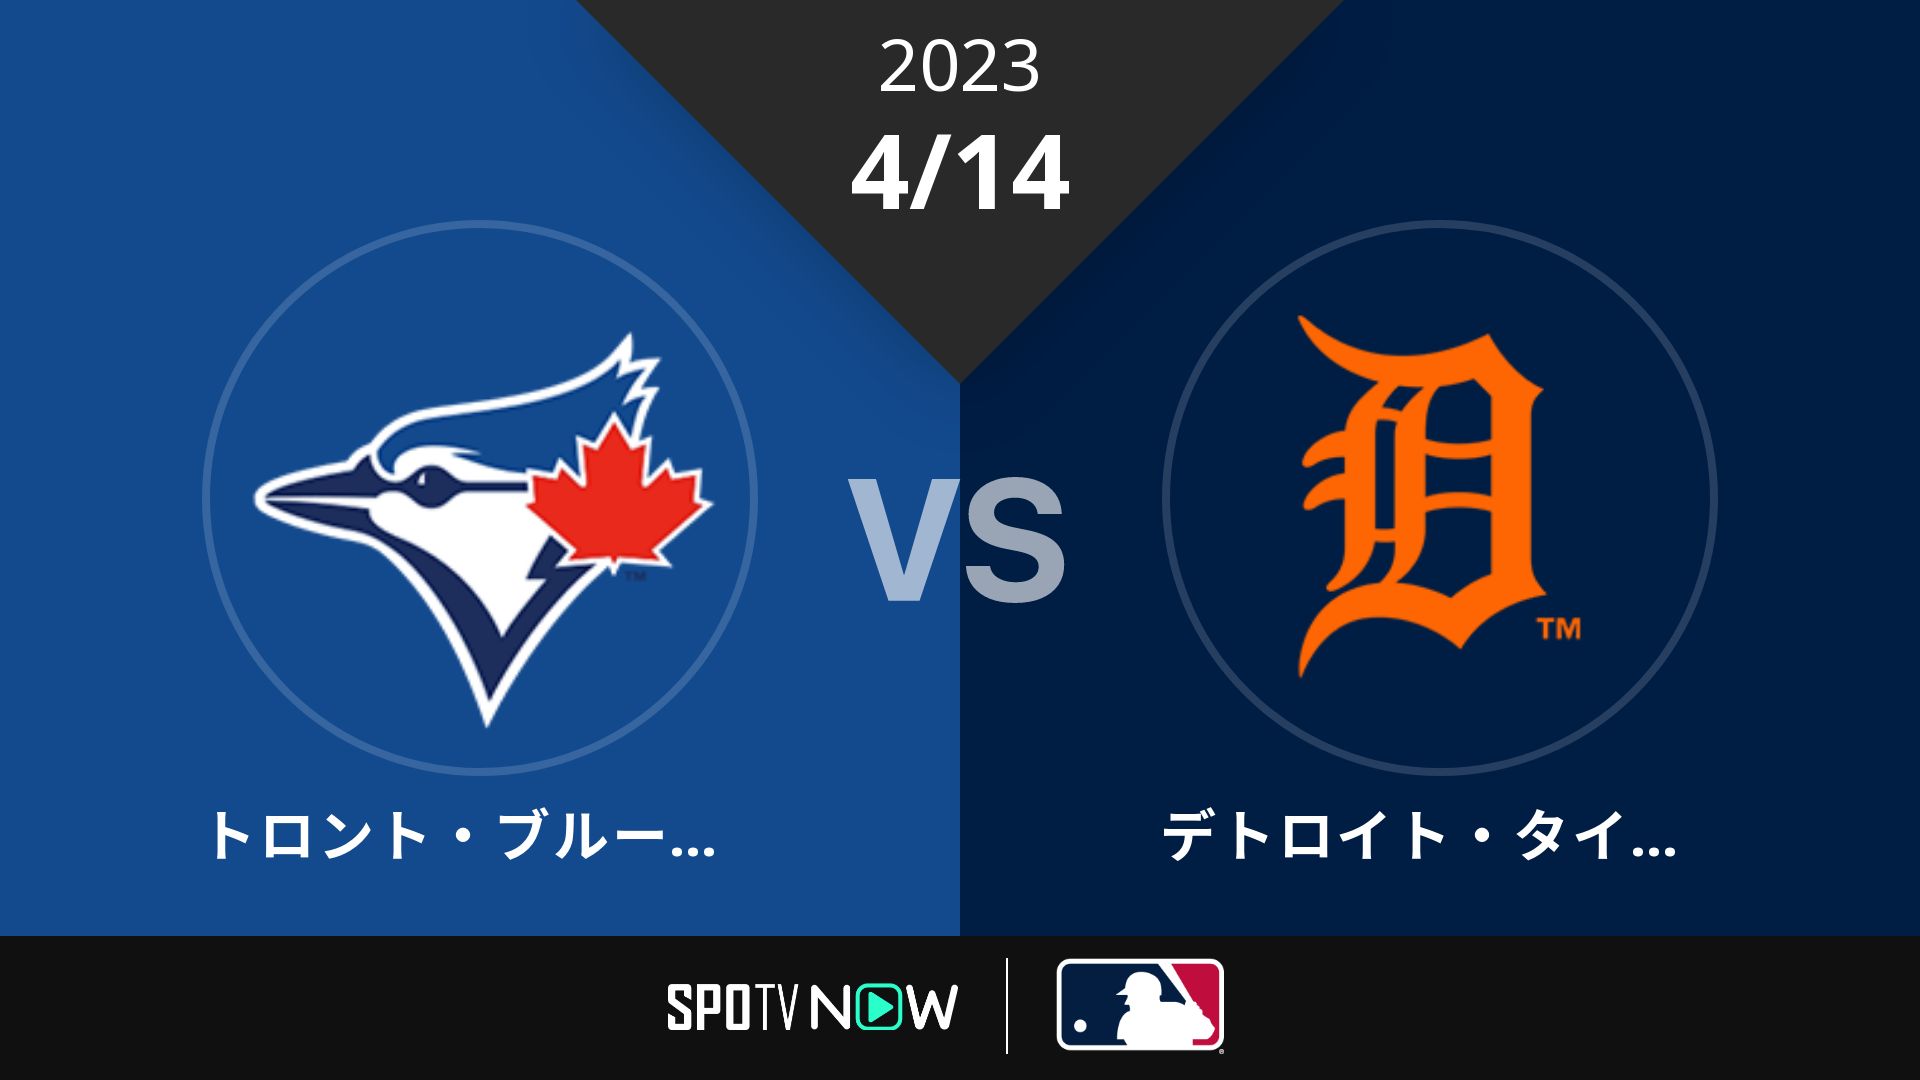 2023/4/14 ブルージェイズ vs タイガース [MLB]